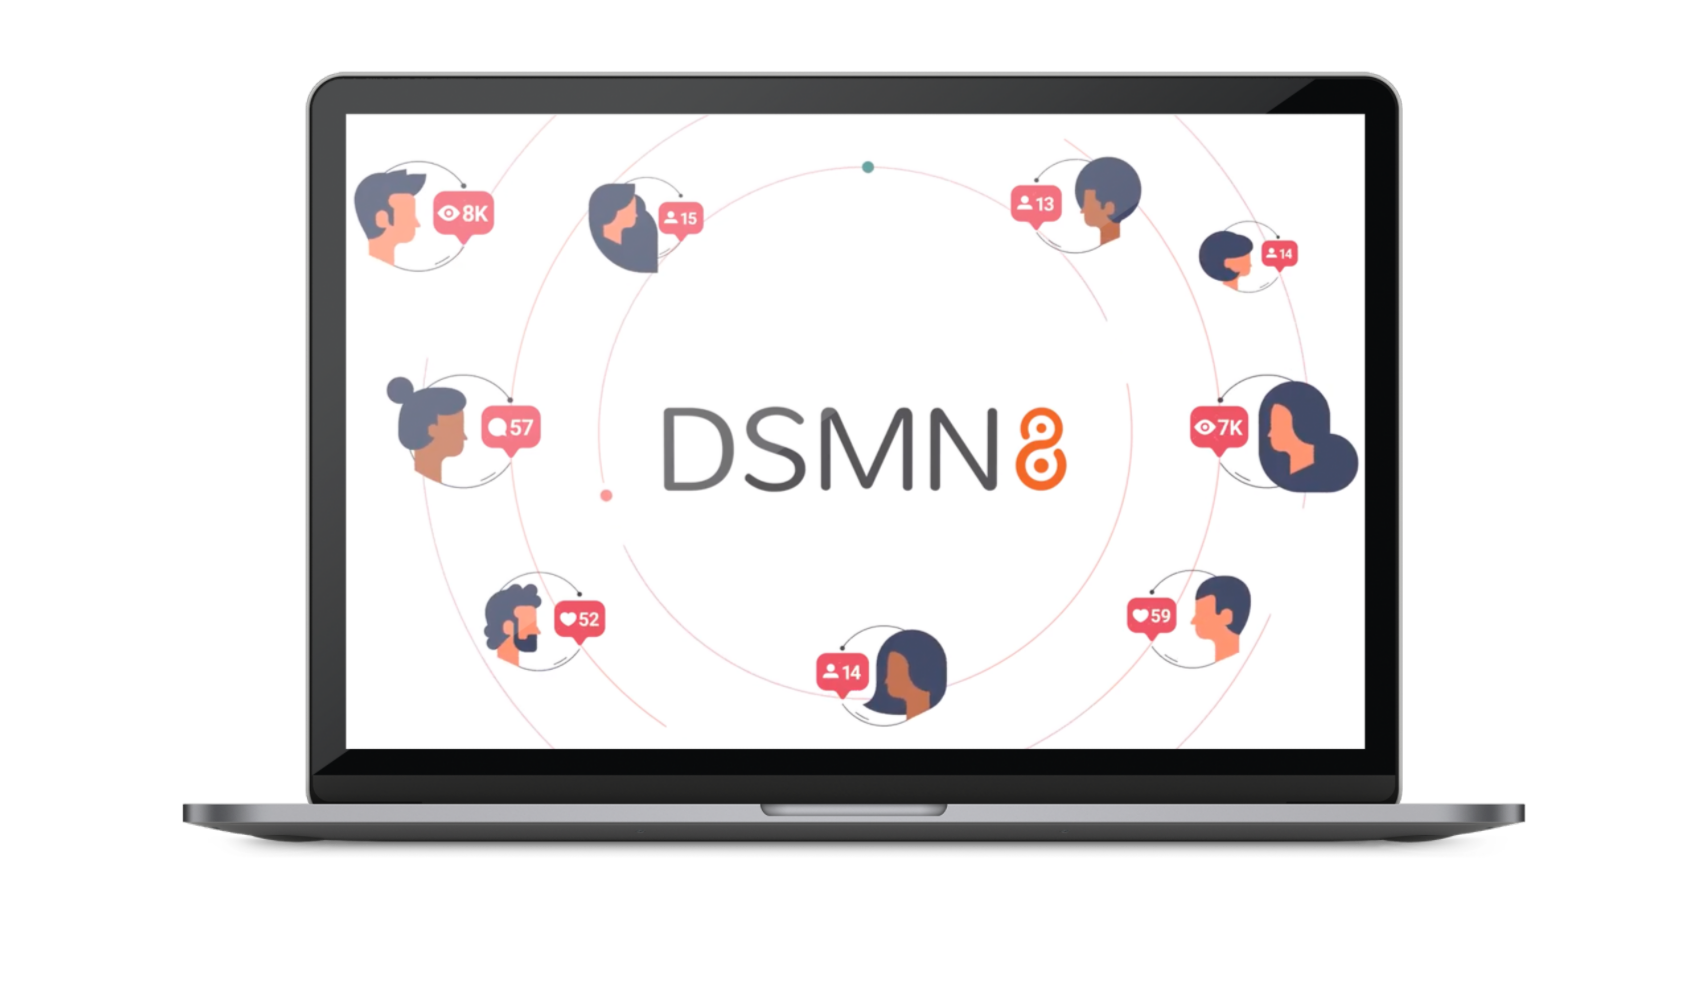 DSMN8 Partner Program